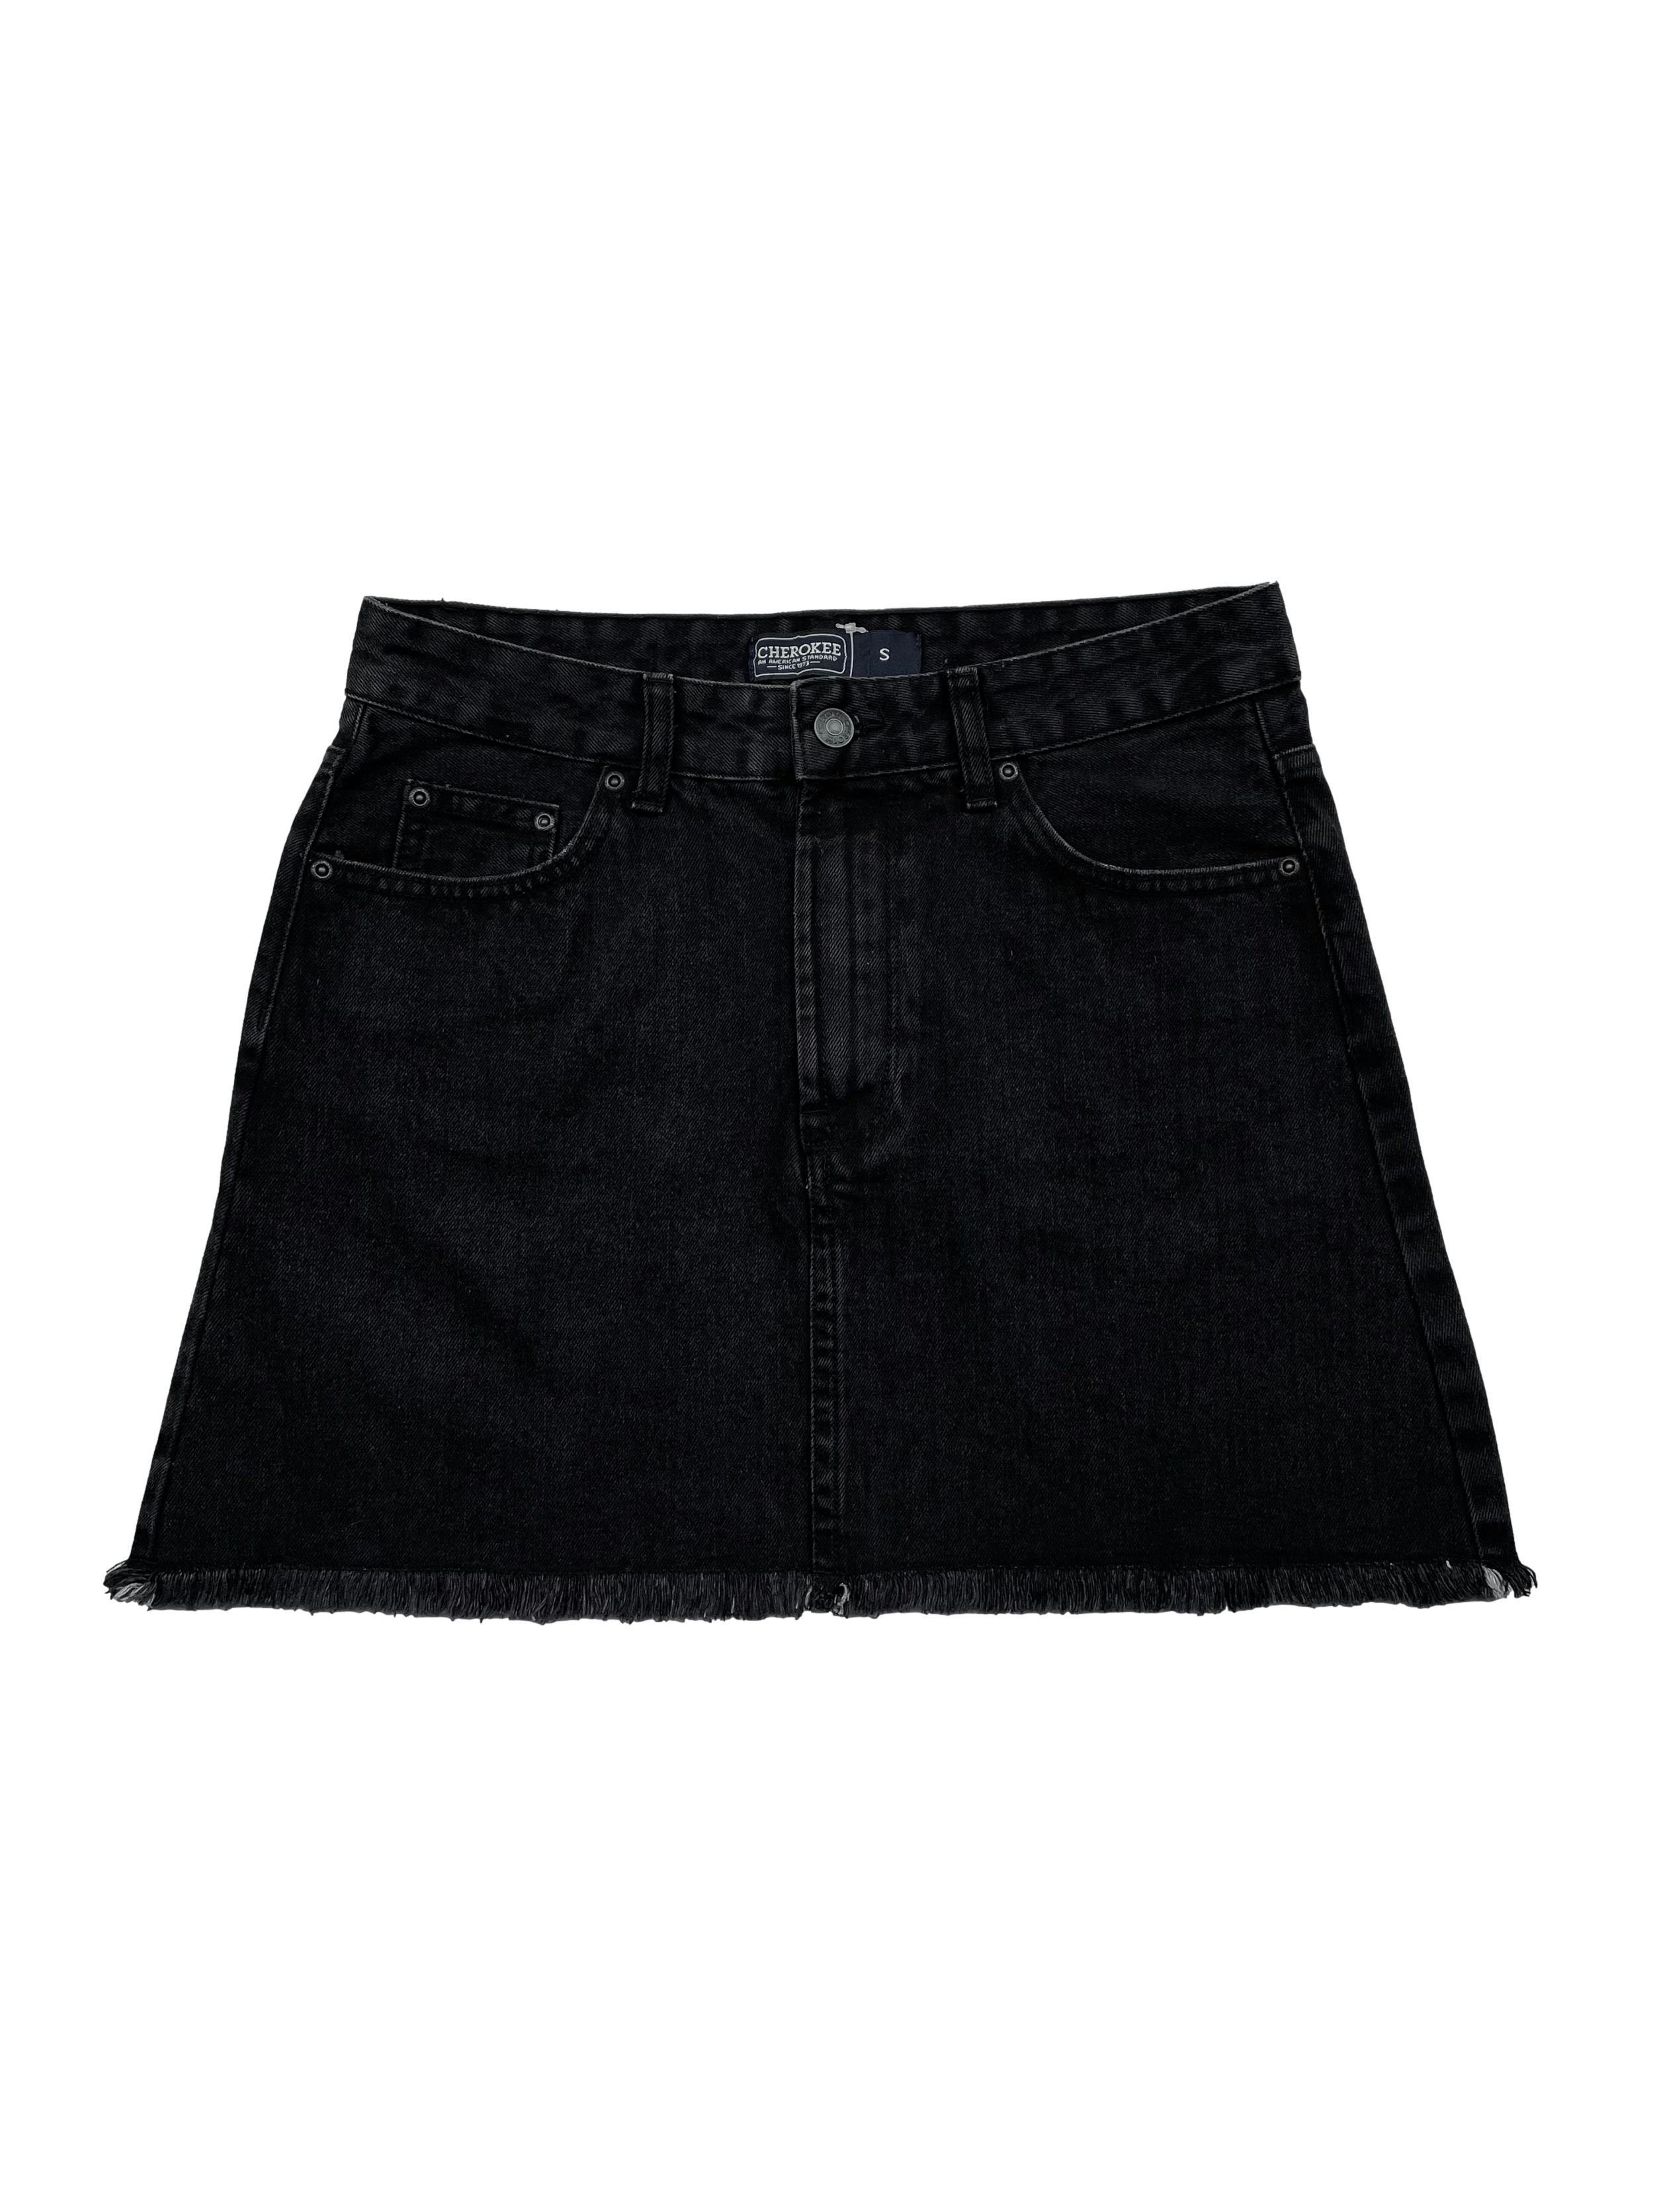 Falda jean Cherokee negra efecto lavado con basta desflecada. Cintura 72cm Largo 41cm